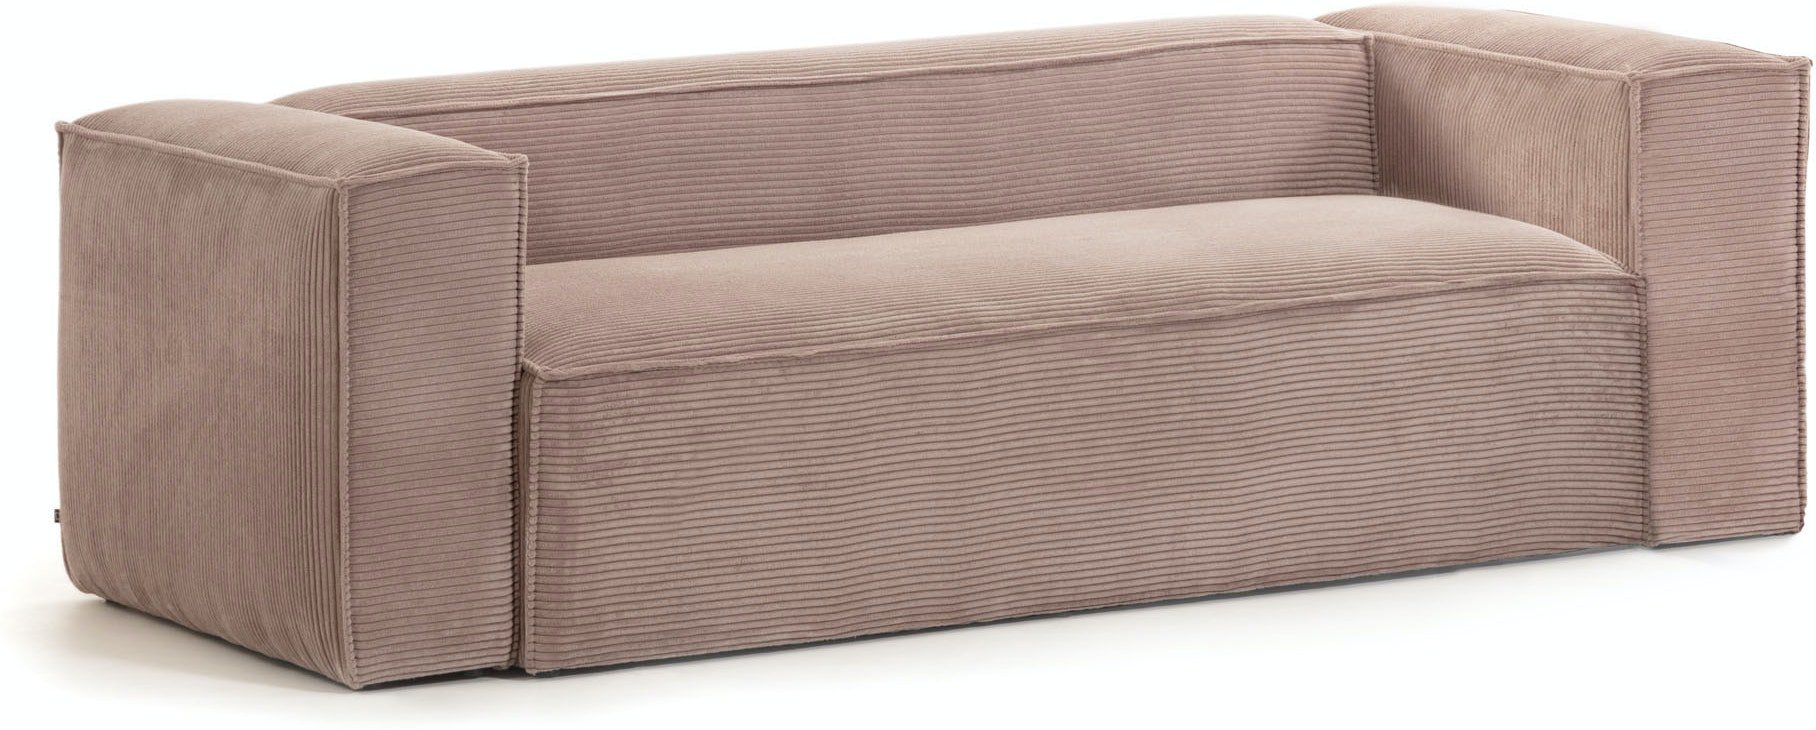 Blok, 3-personers sofa, Fjøjl by LaForma (H: 69 cm. B: 240 cm. L: 100 cm., Lyserød)